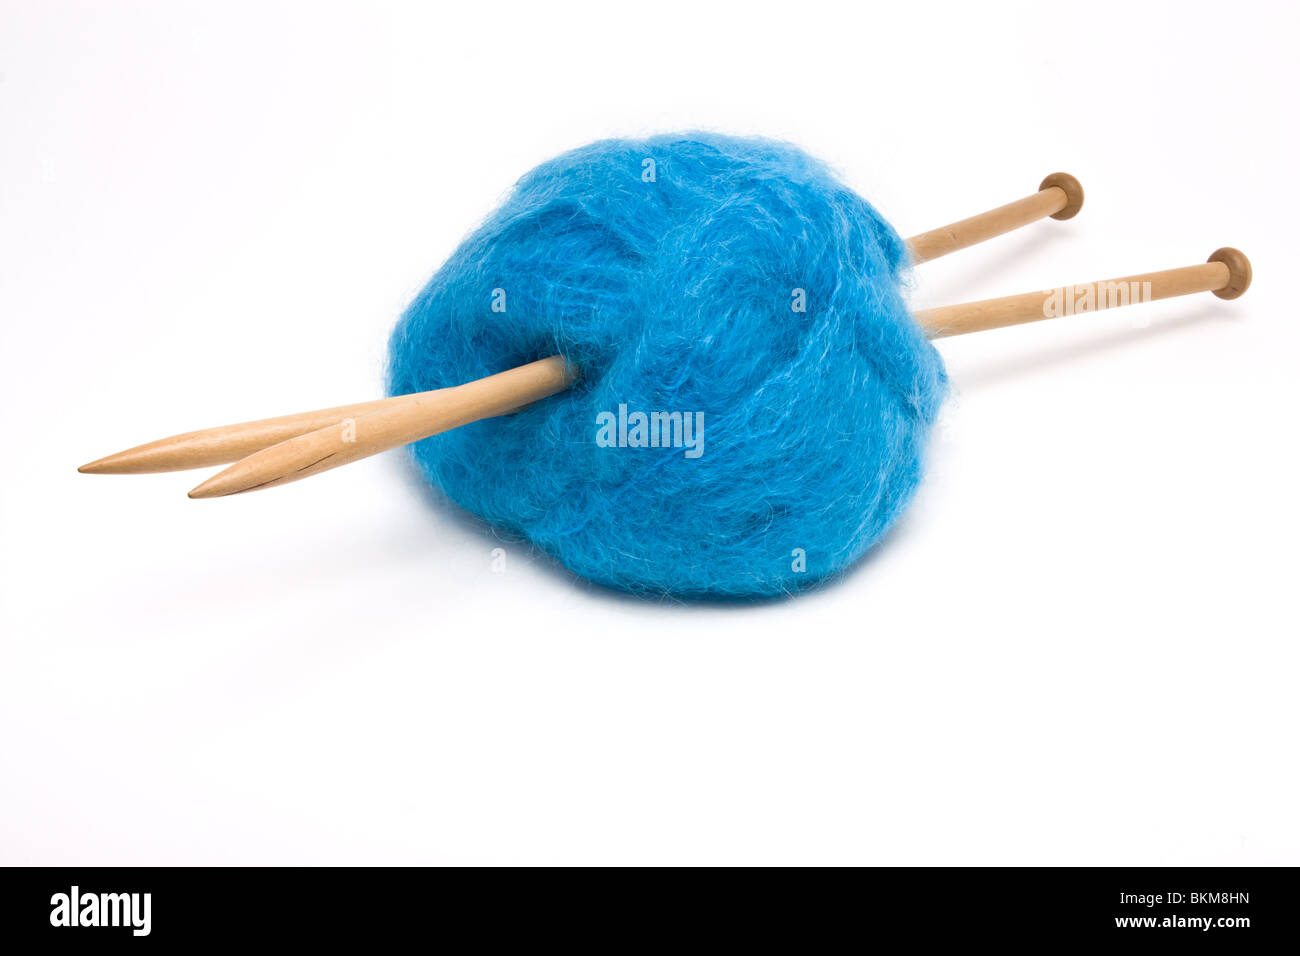 Una gran bola de lana mohair azul perforada con agujas de tejer de madera grande contra blanco. Foto de stock